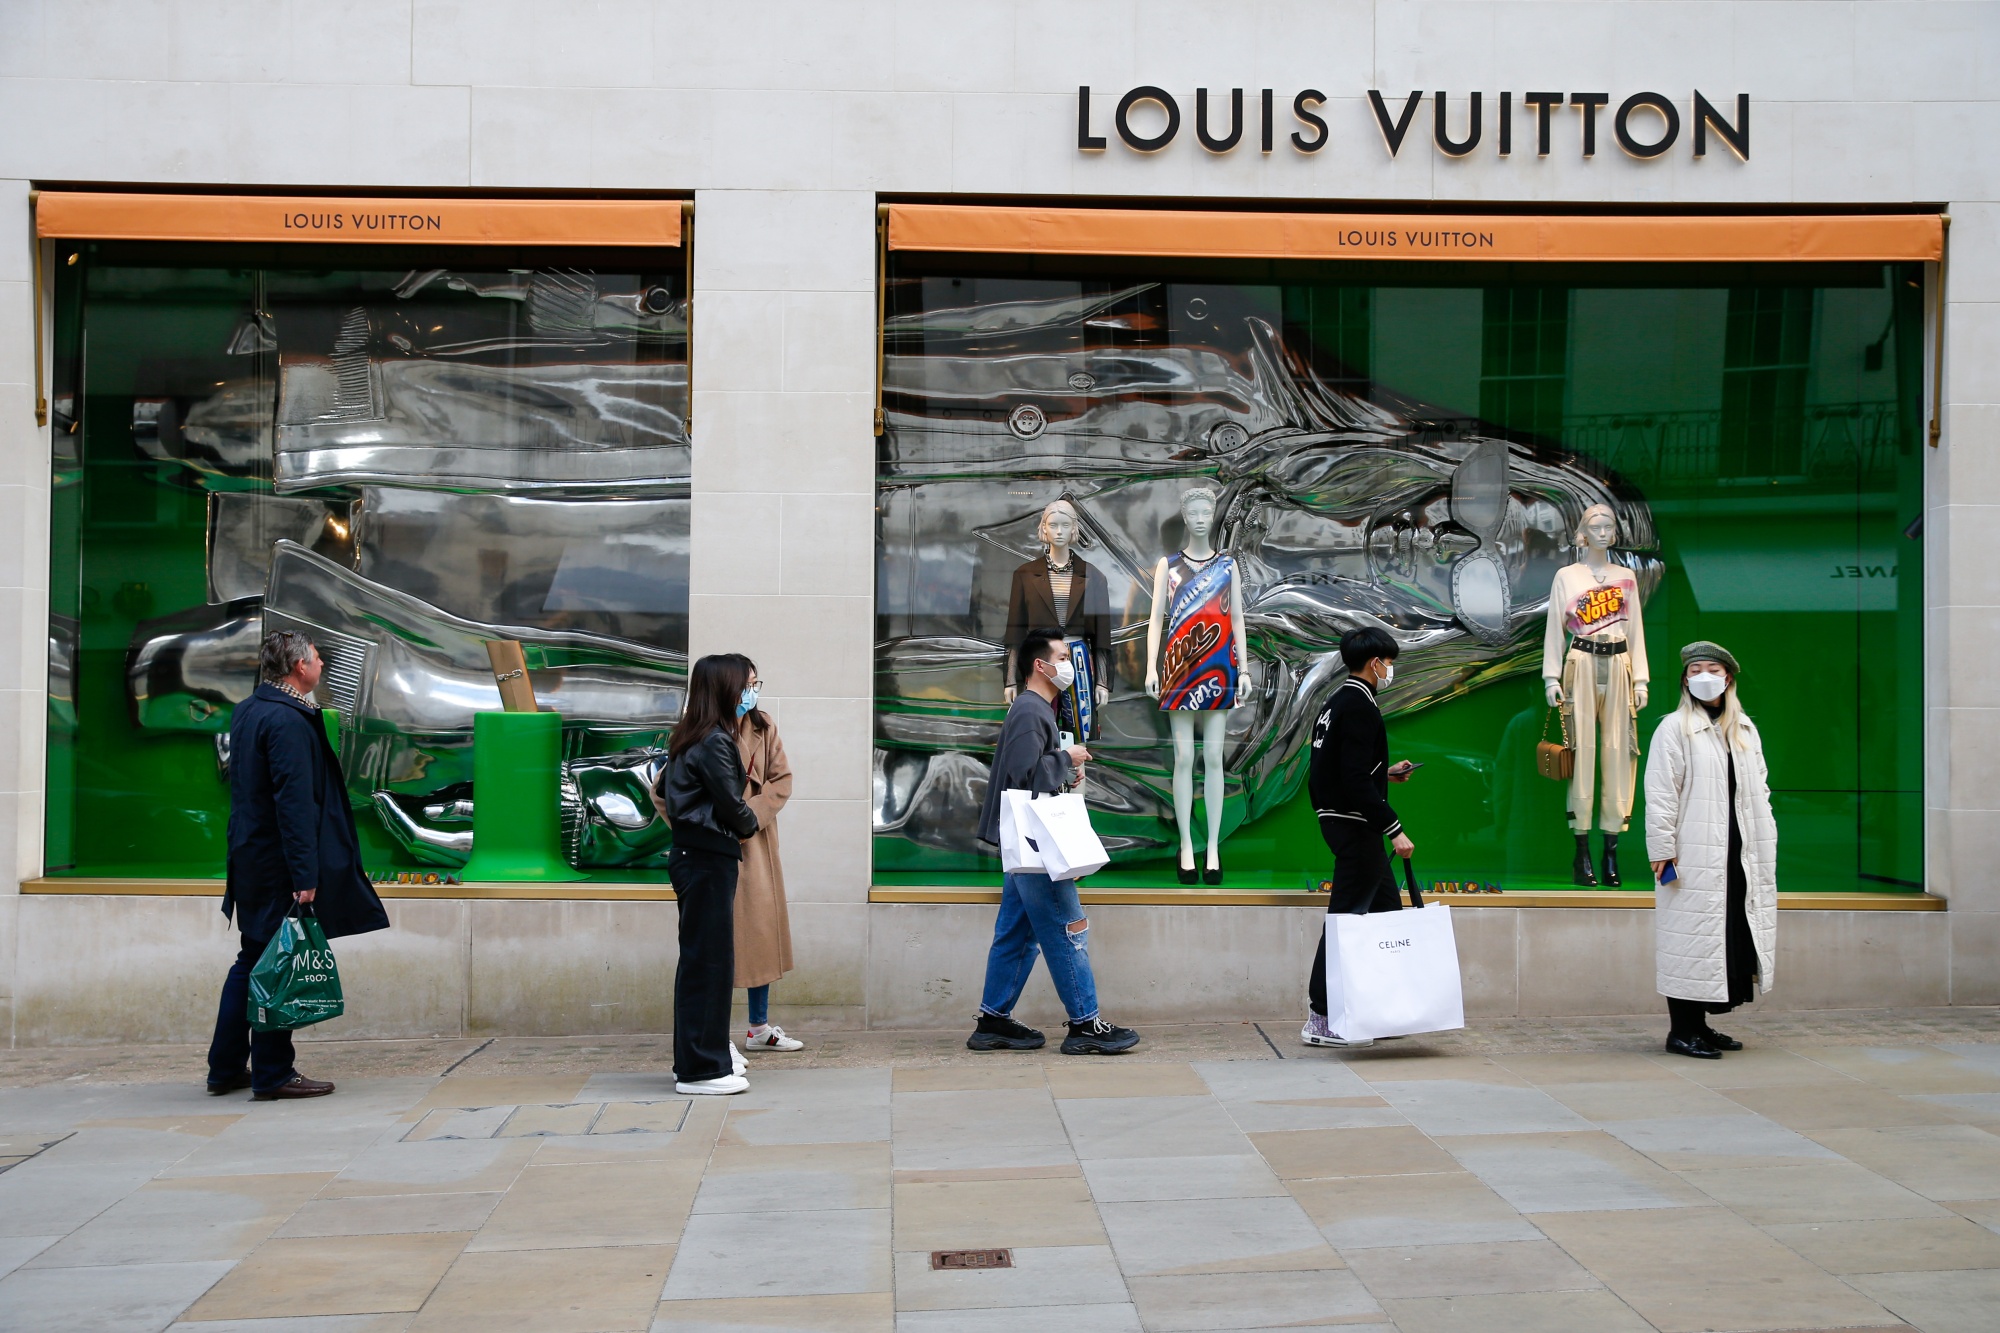 Louis Vuitton is now delivering luxury to your door – via men in sharp  suits - CNA Luxury